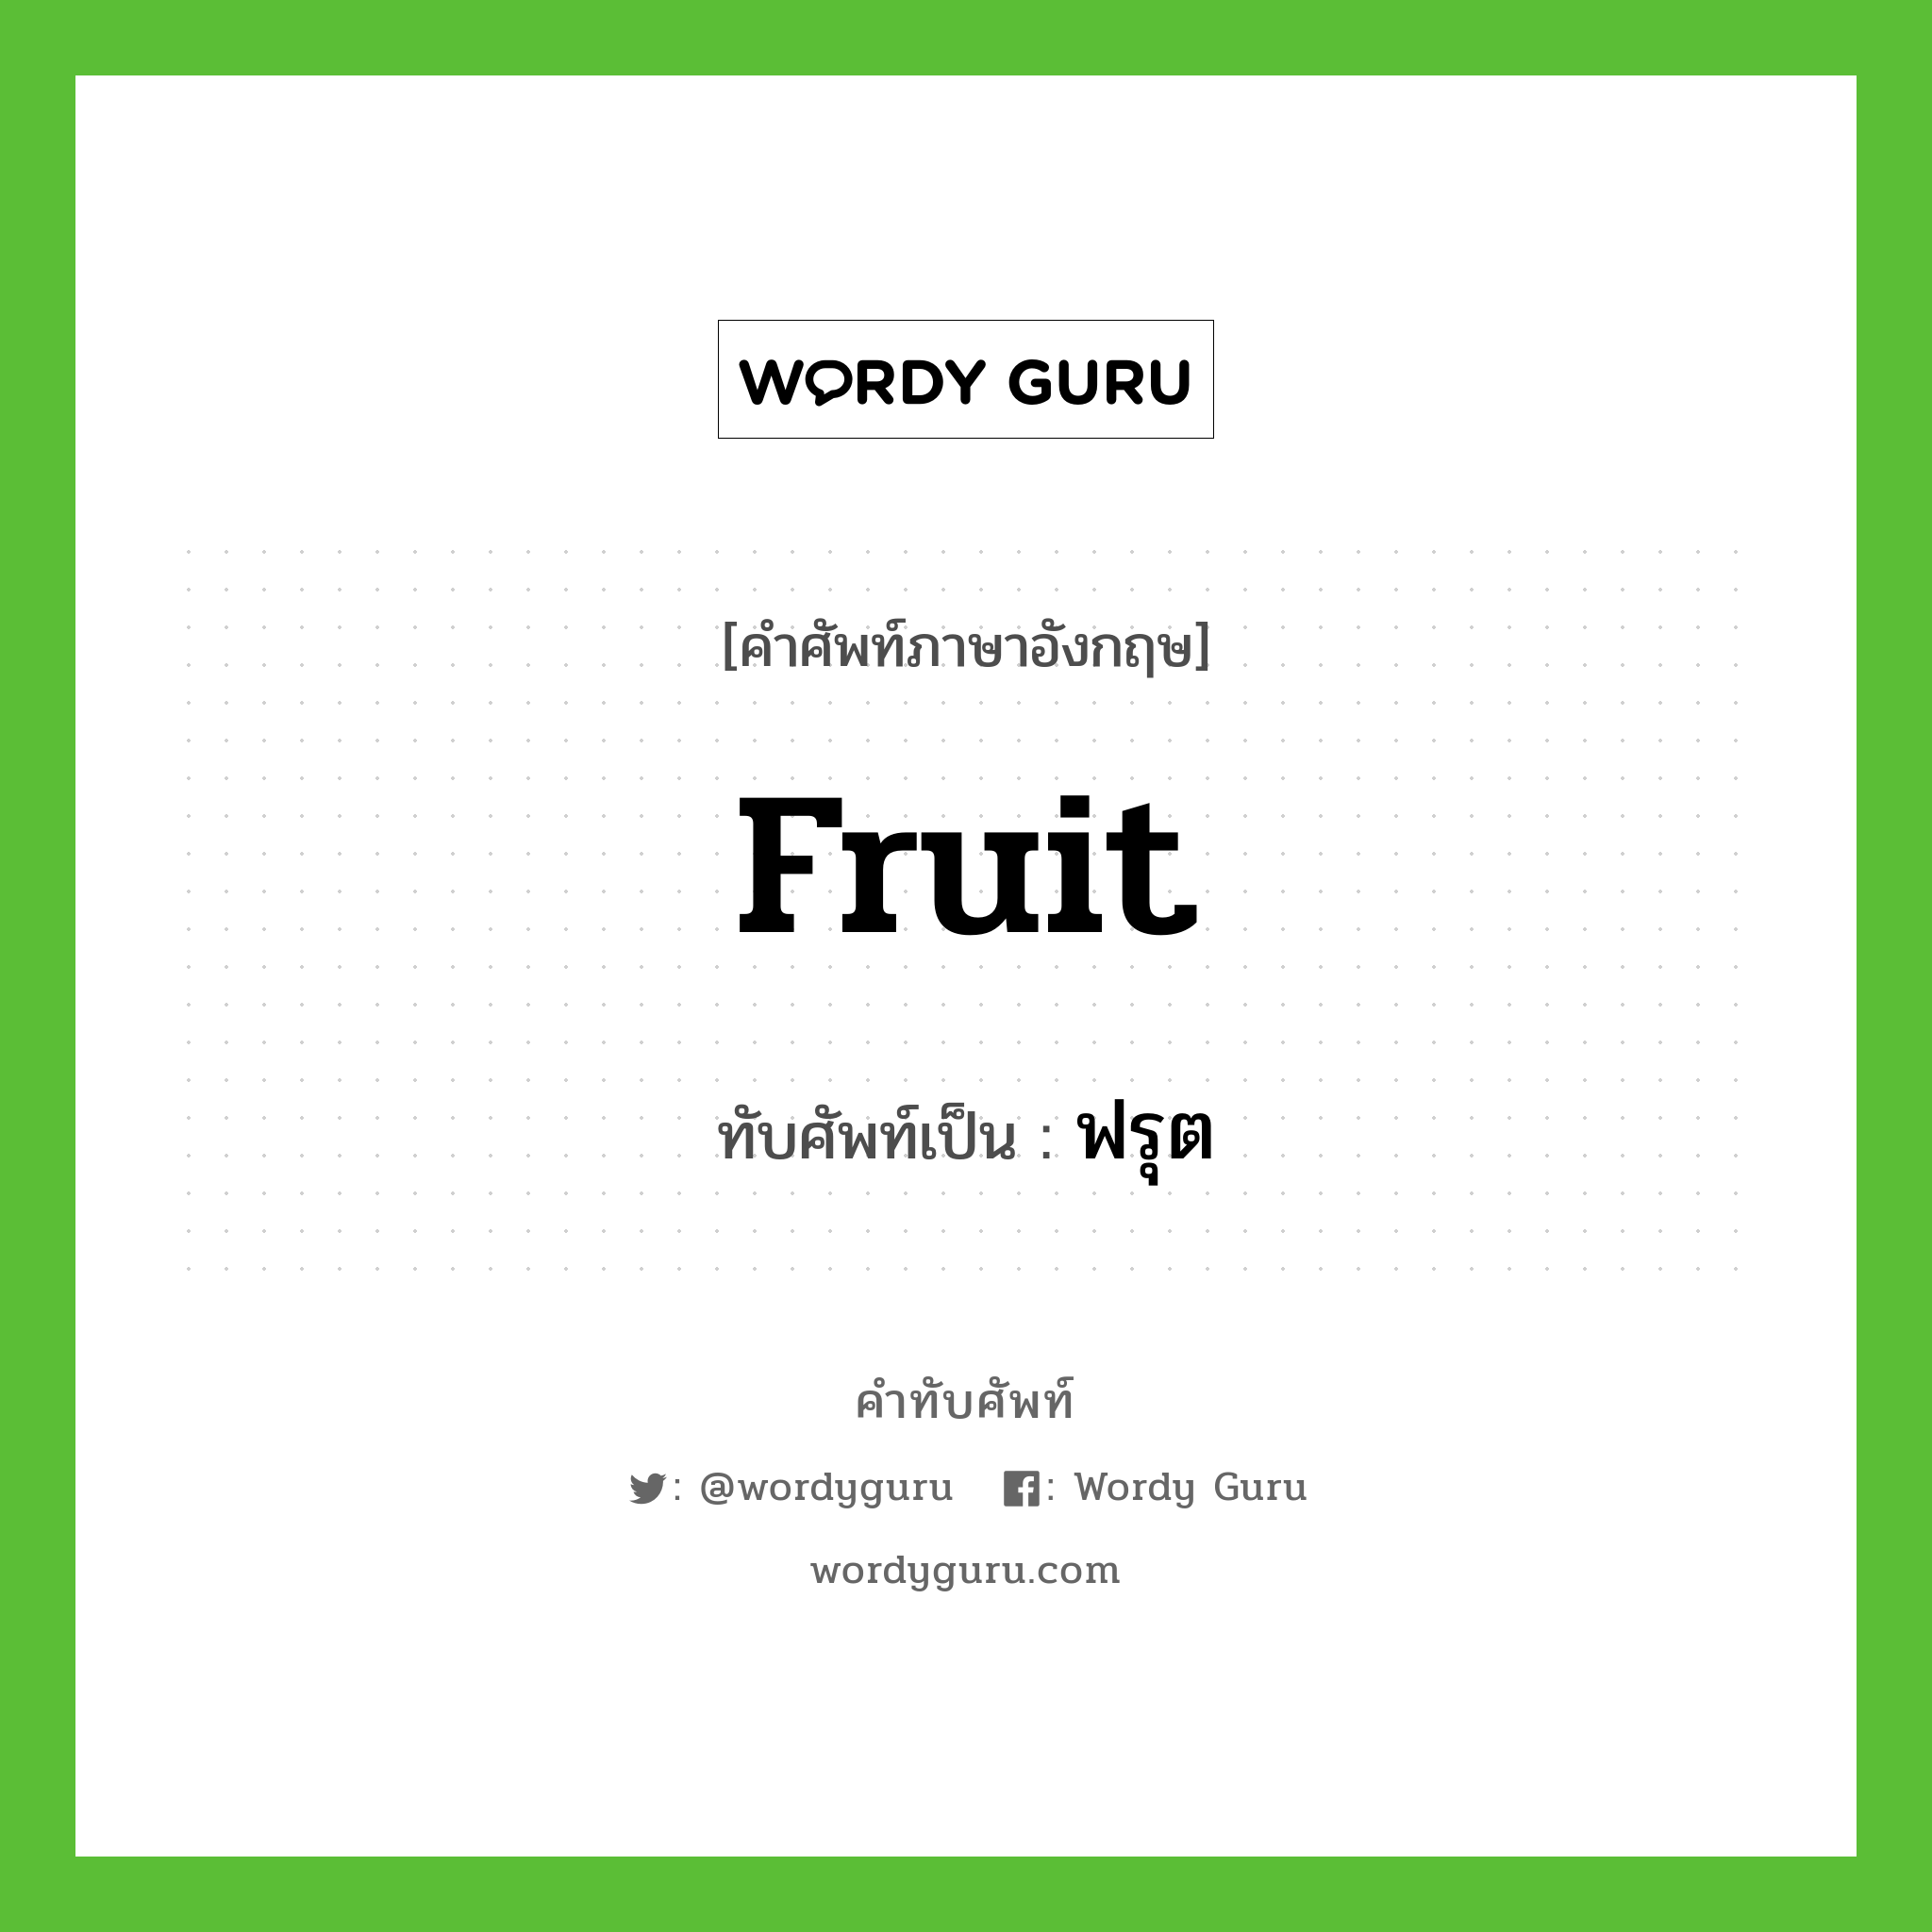 fruit เขียนเป็นคำไทยว่าอะไร?, คำศัพท์ภาษาอังกฤษ fruit ทับศัพท์เป็น ฟรุต